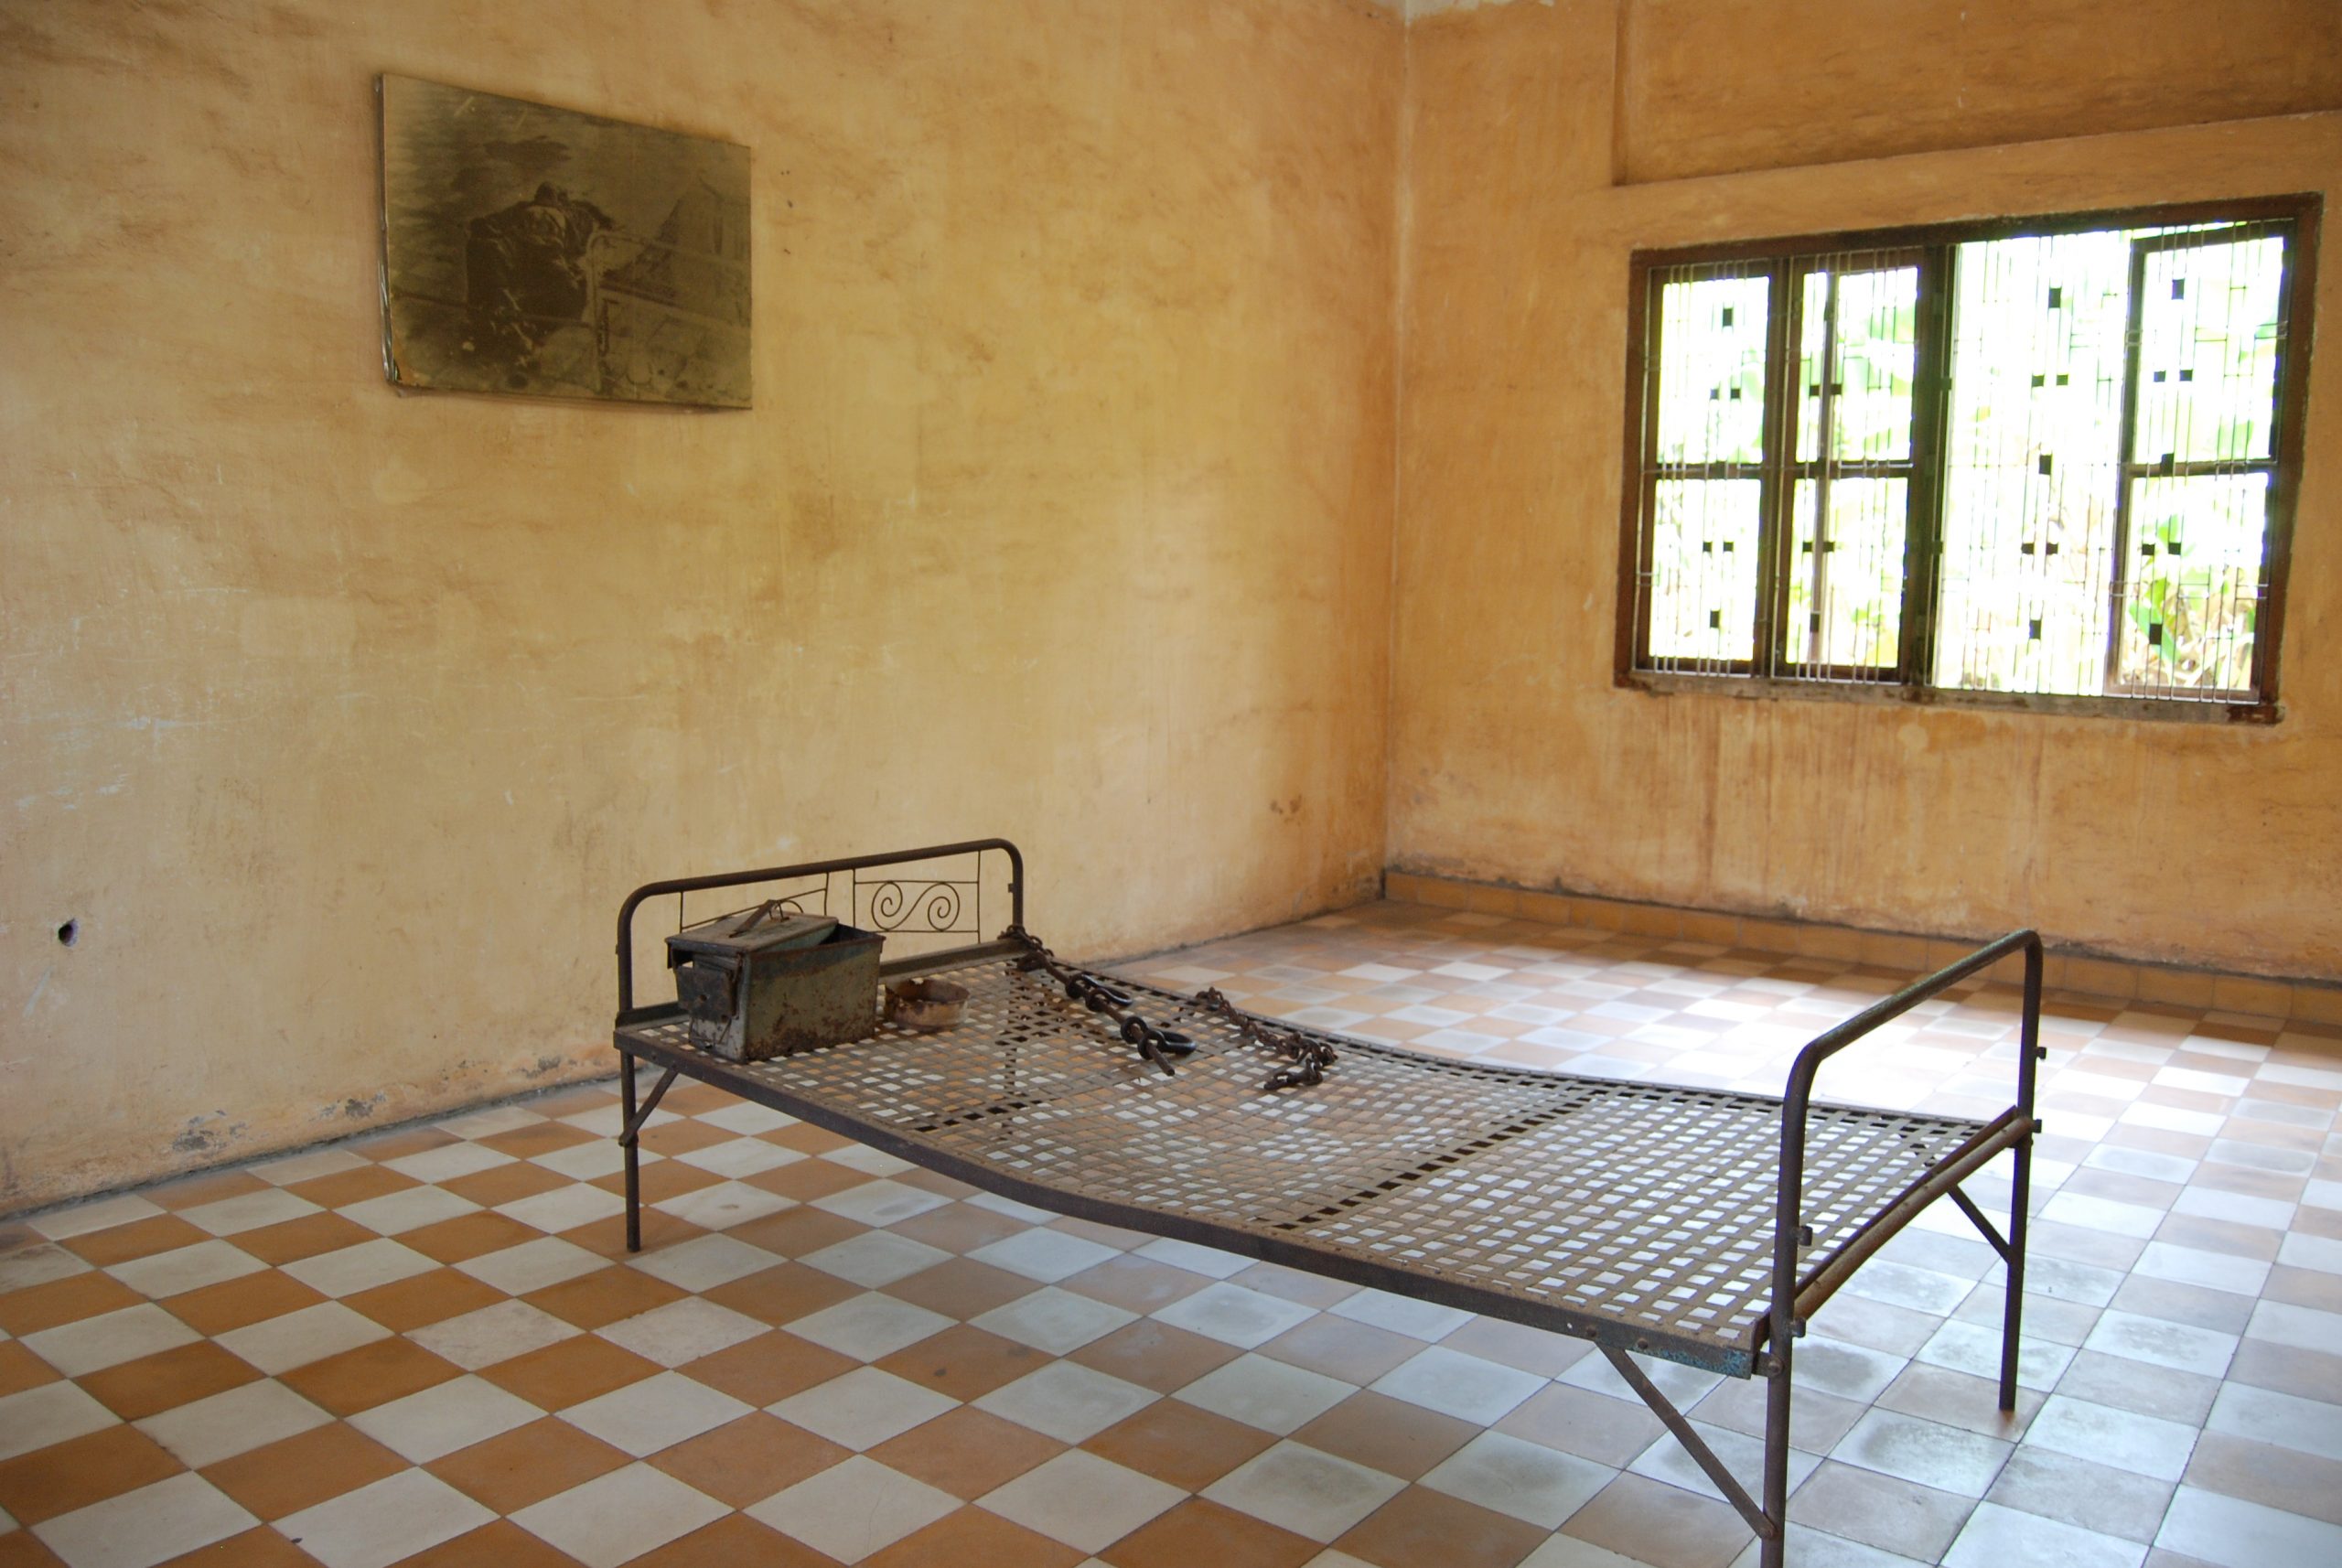 En metallseng med lenker står plassert midt i et gammelt klasserom med flislagt gulv i oransje og hvitt. En metallboks står plassert oppå sengen.